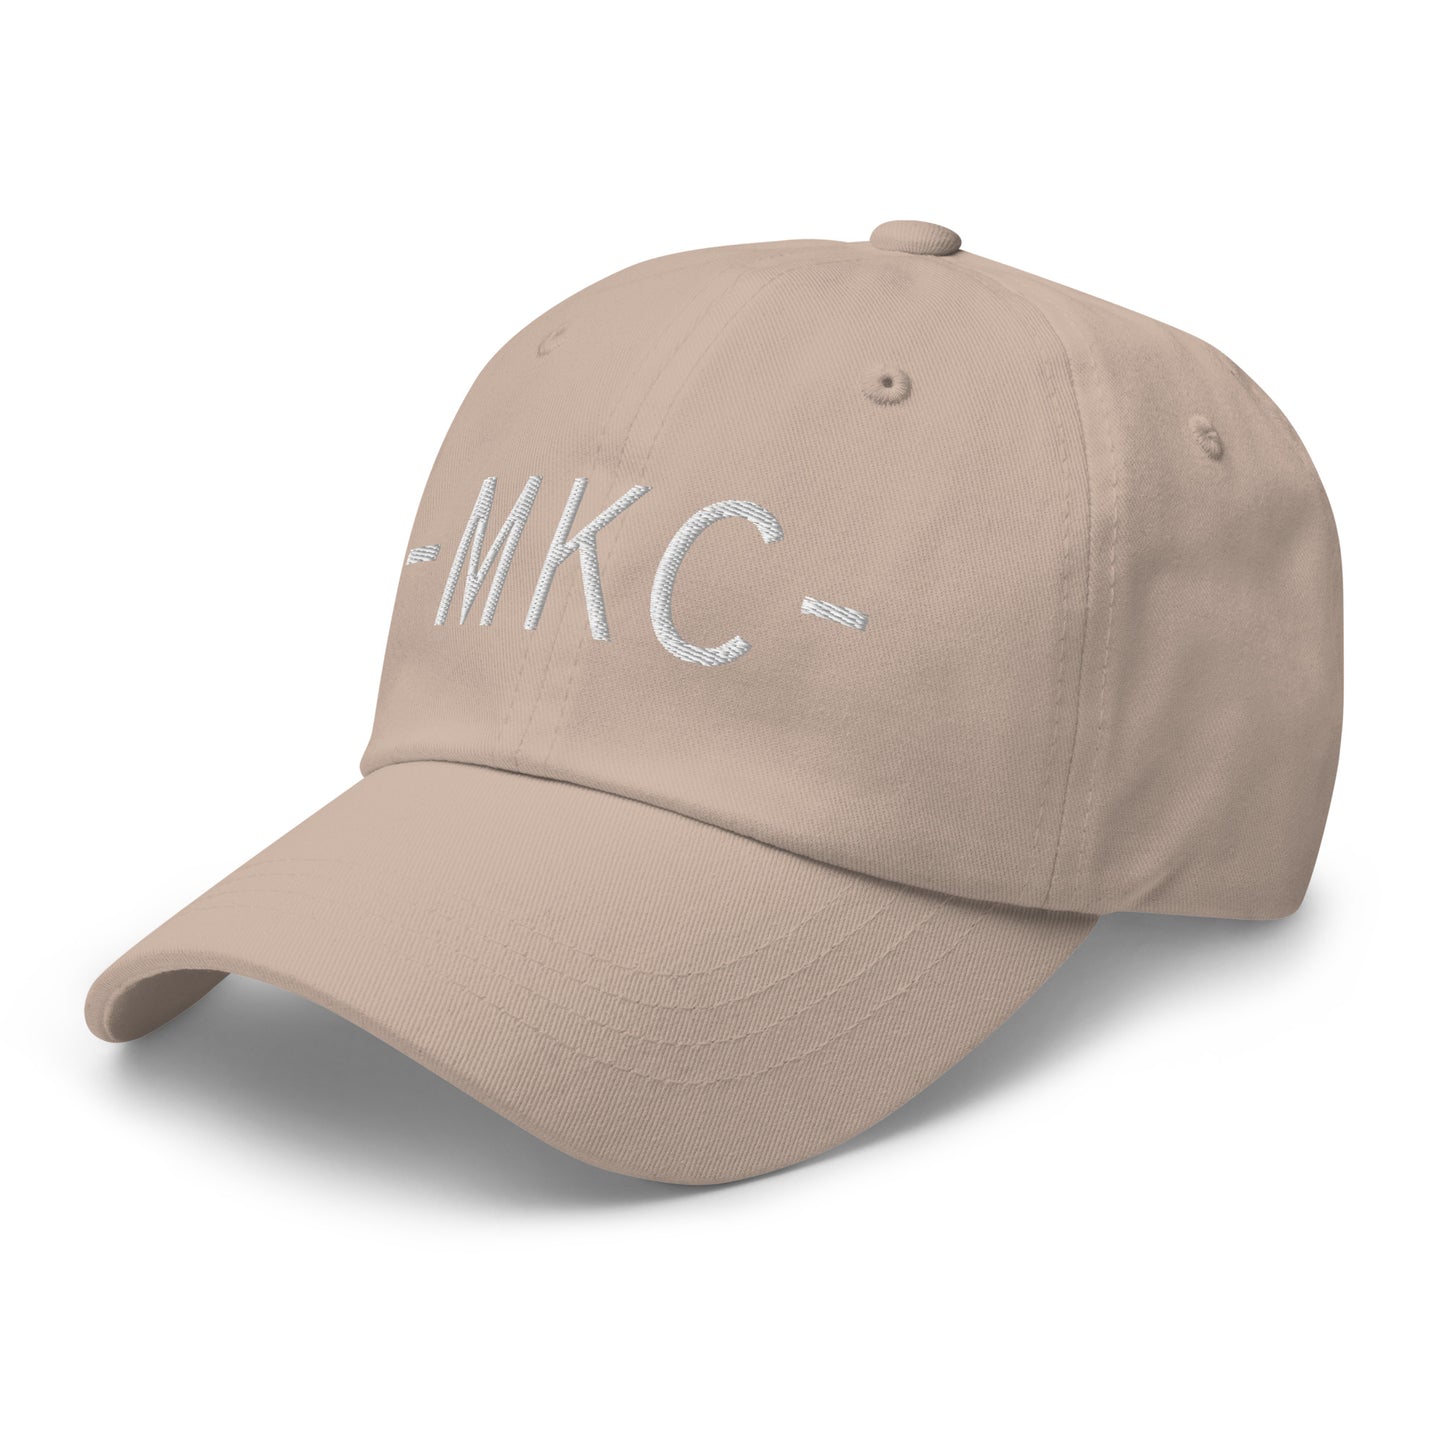 Souvenir Baseball Cap - White • MKC Kansas City • YHM Designs - Image 24